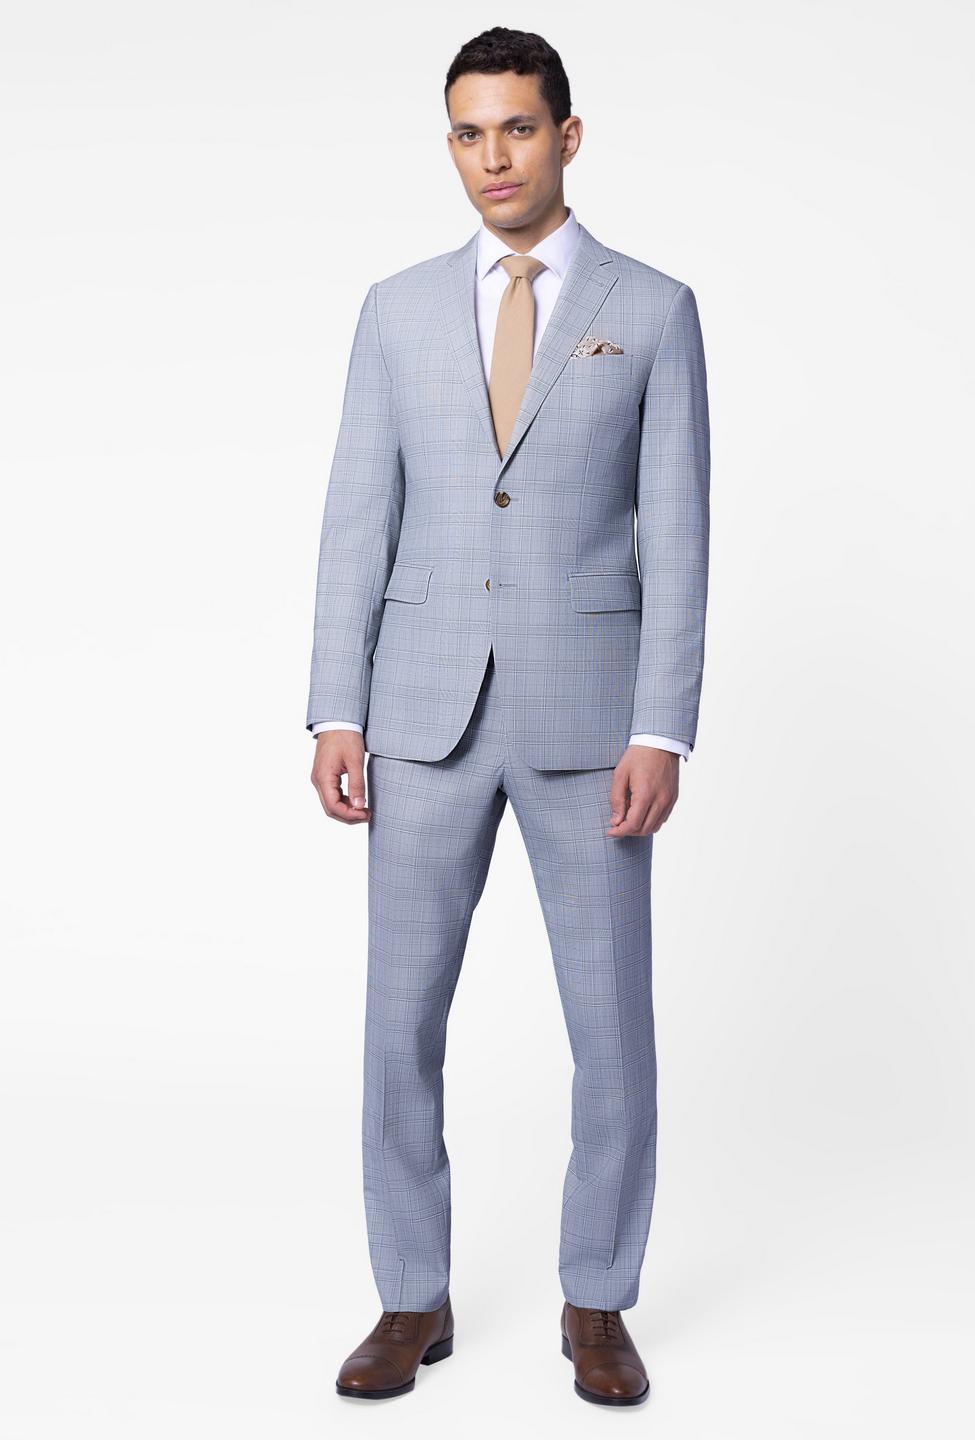 Kettering Glen Check Sage Suit